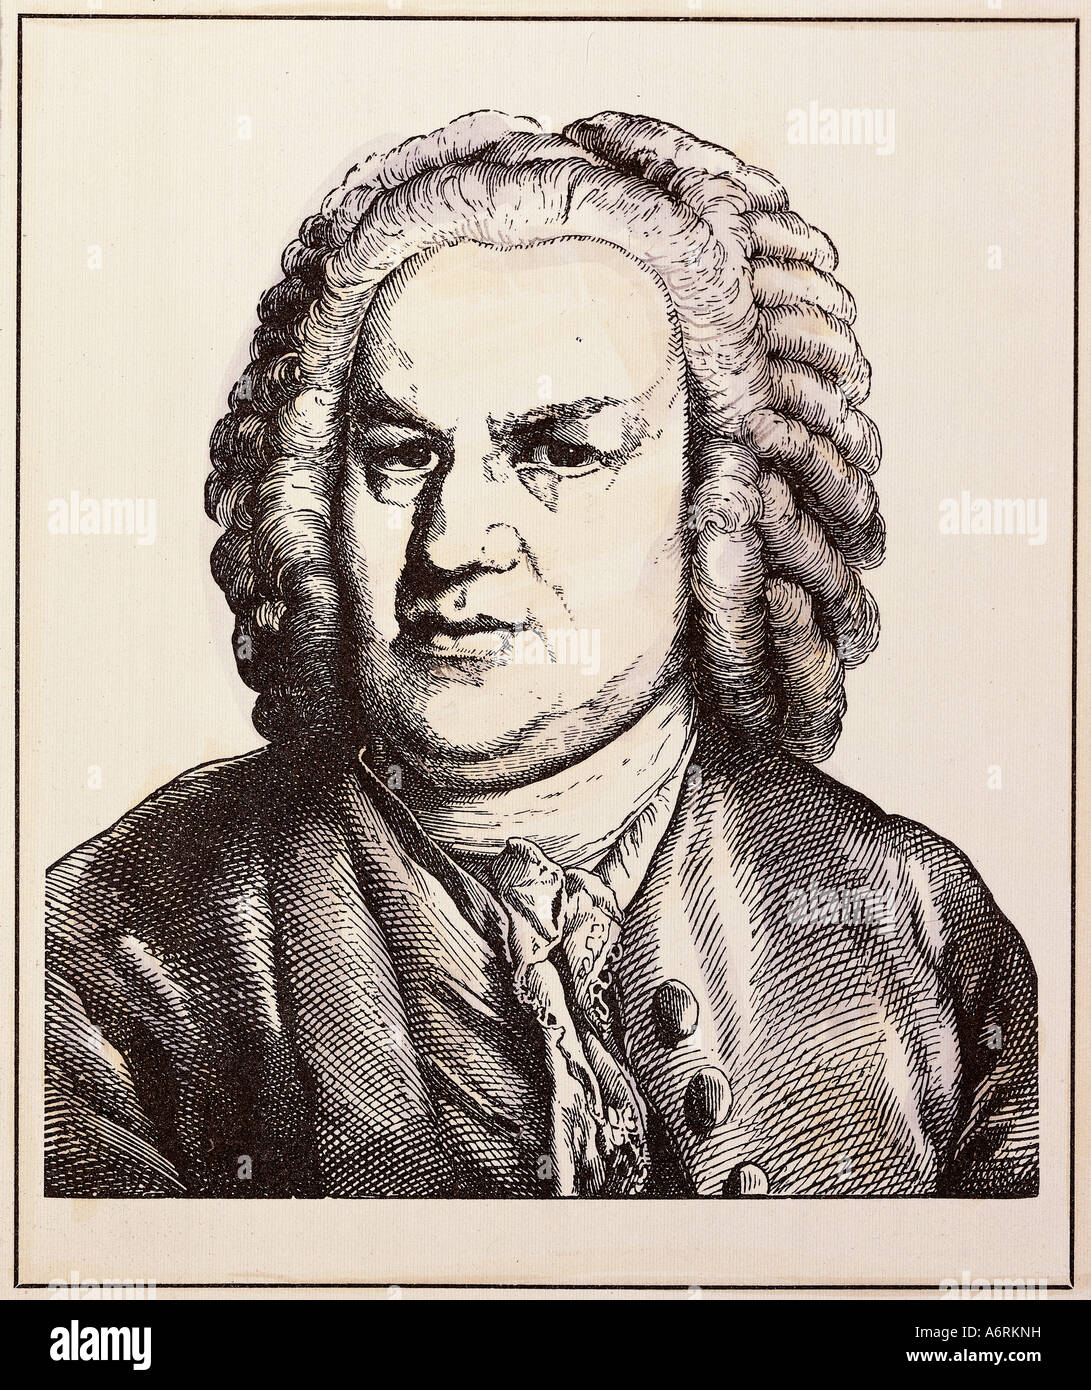 Bach, Johann Sebastian, 21.3.1685 - 28.7.1750, del compositore tedesco, ritratto, incisione da Hugo Bürkner, 1854, Germania, XVIII secolo Foto Stock